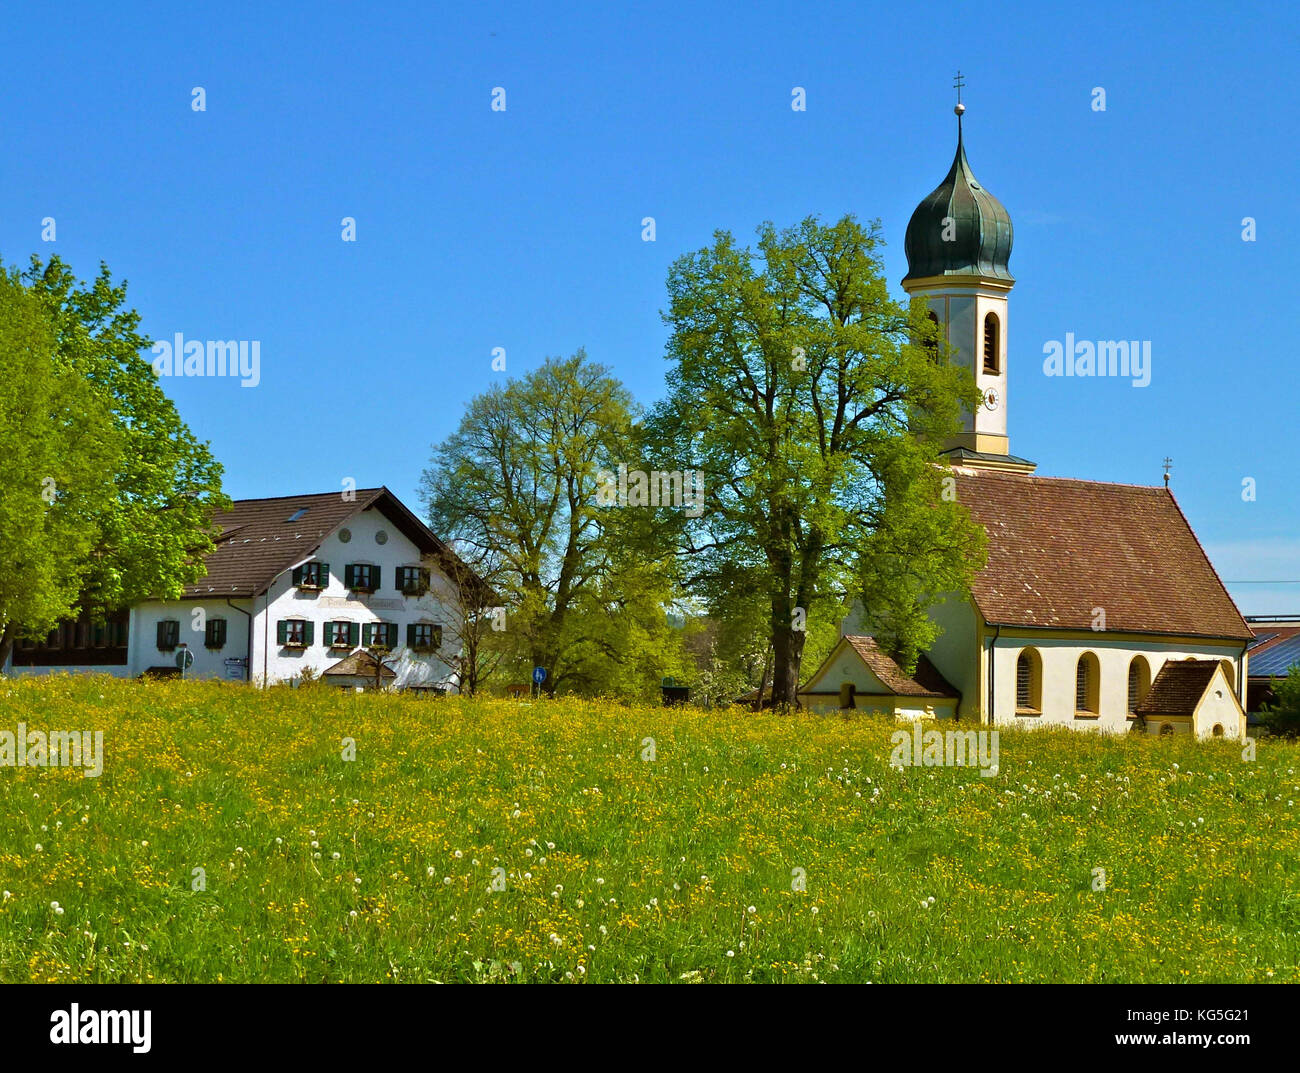 In Germania, in Baviera, Froschhausen am Riegsee (lago), la chiesa St. Leonhard, Pension San Leonardo (guesthouse), prati, alberi, blu cielo, molla Foto Stock